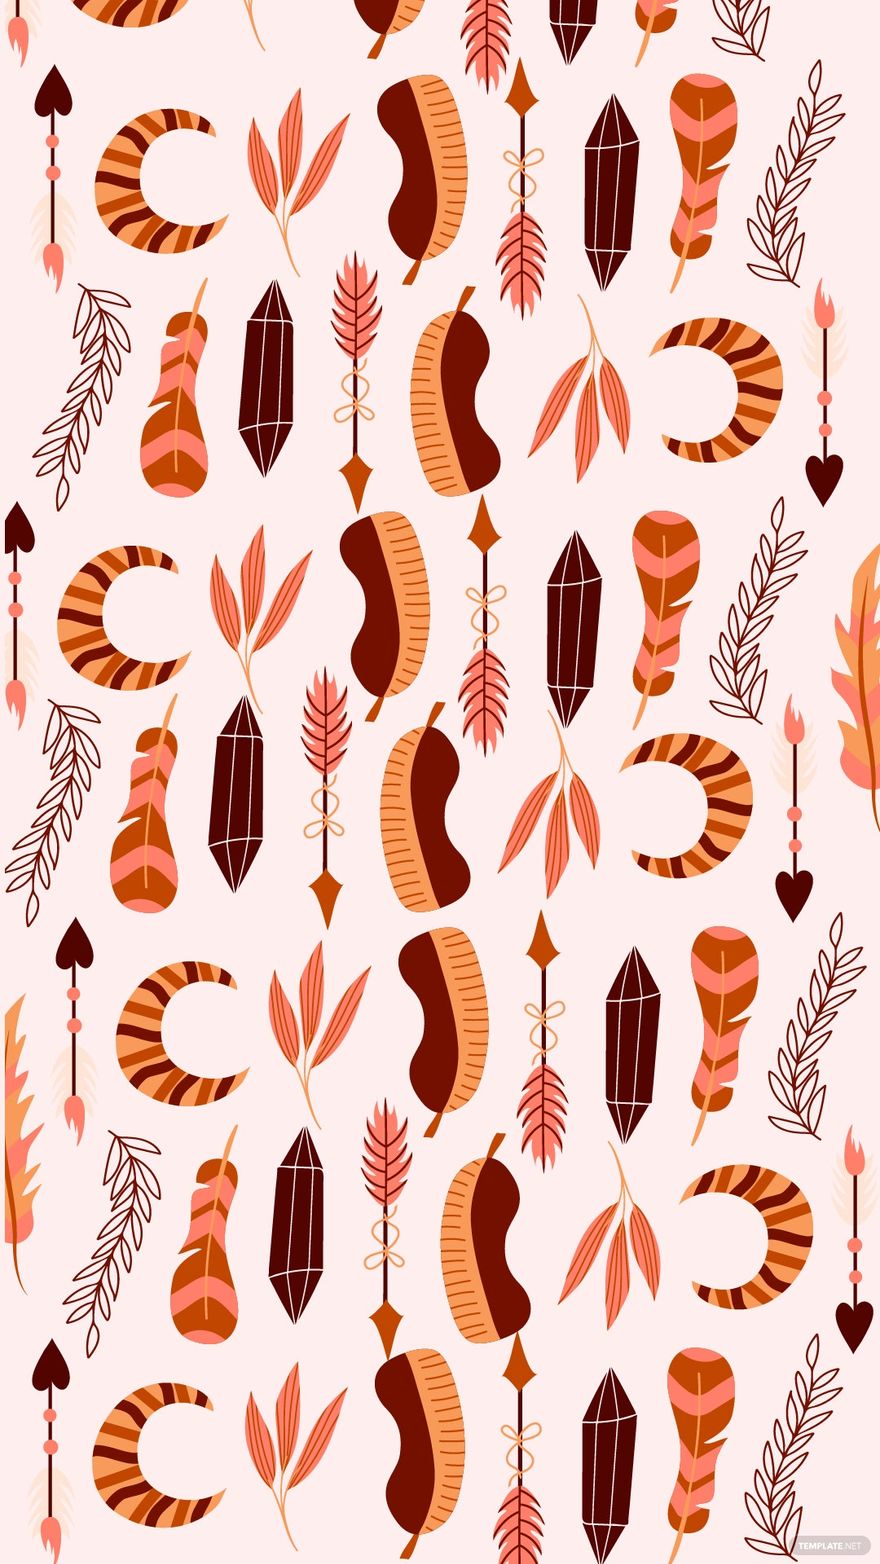 Free Boho Floral Pattern Background in Illustrator, EPS, SVG, JPG